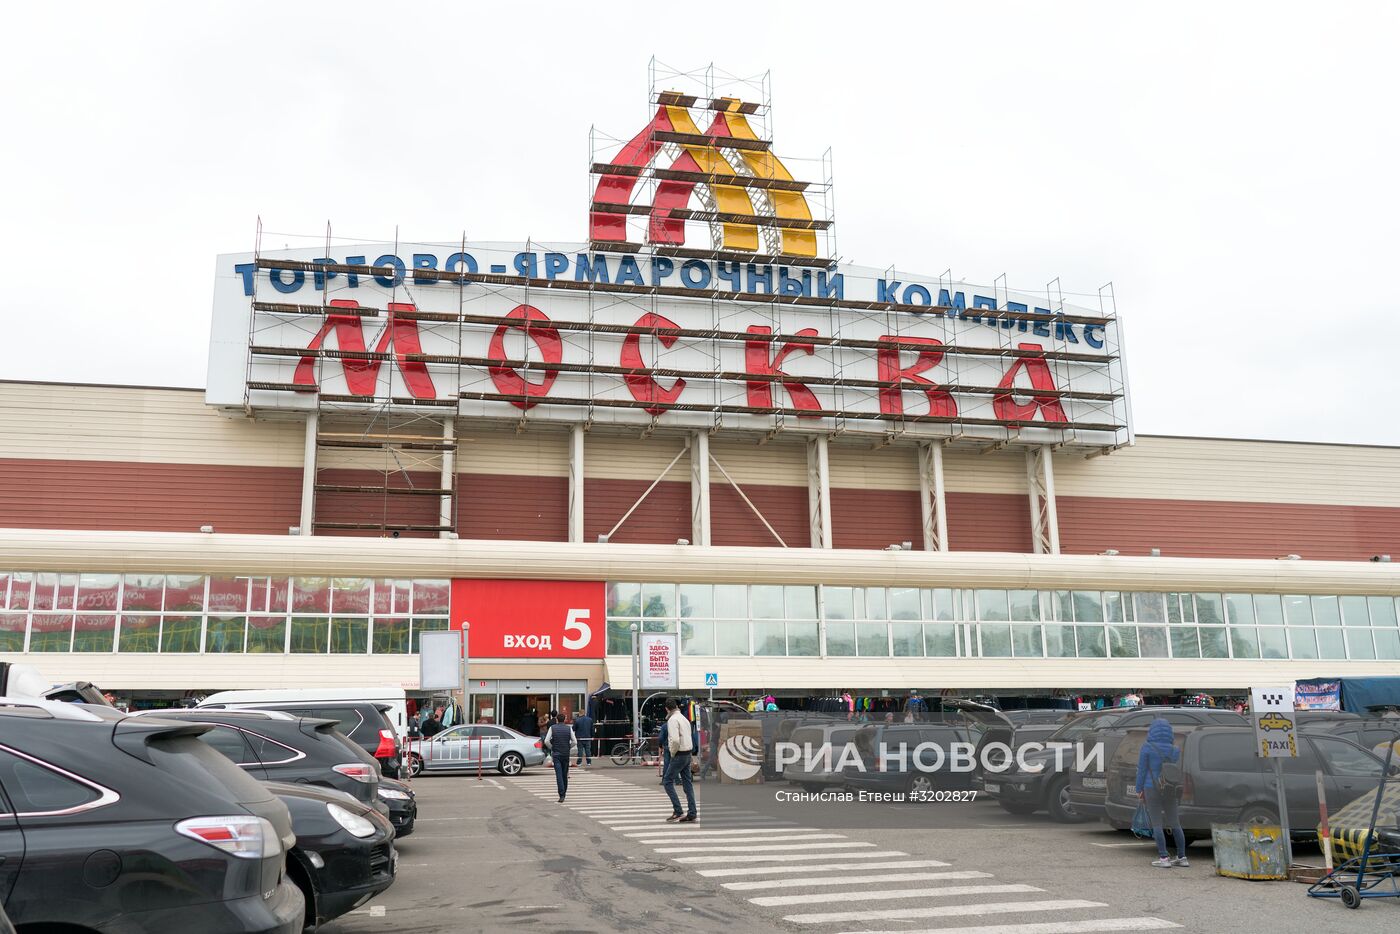 Торгово-ярмарочный комплекс "Москва"